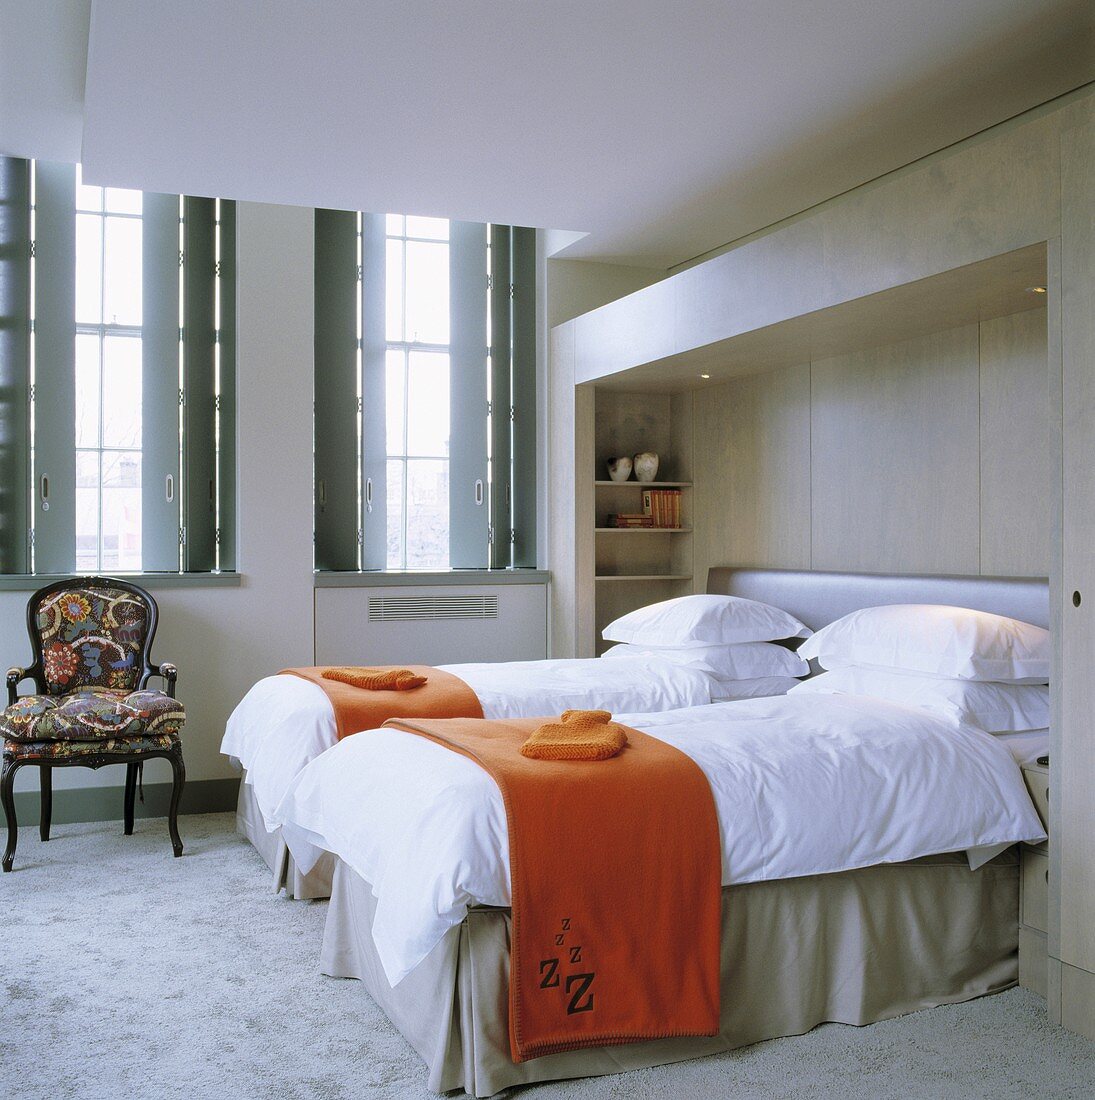 Orangefarbene Tagesdecke auf getrennt stehenden Betten und Fenster mit innenseitigen Läden